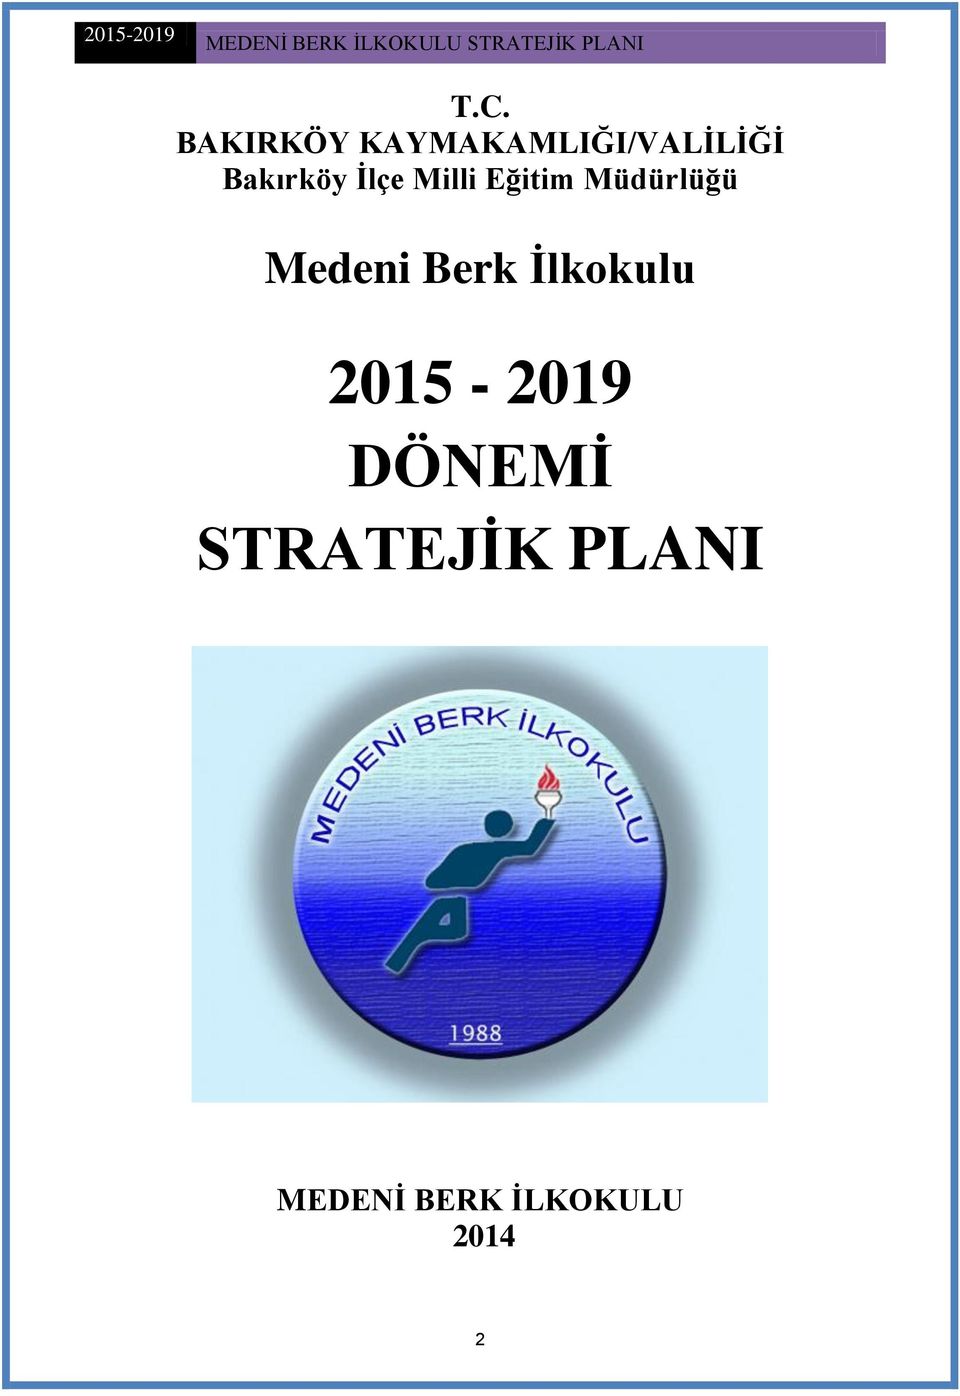 Medeni Berk Ġlkokulu 2015-2019 DÖNEMĠ